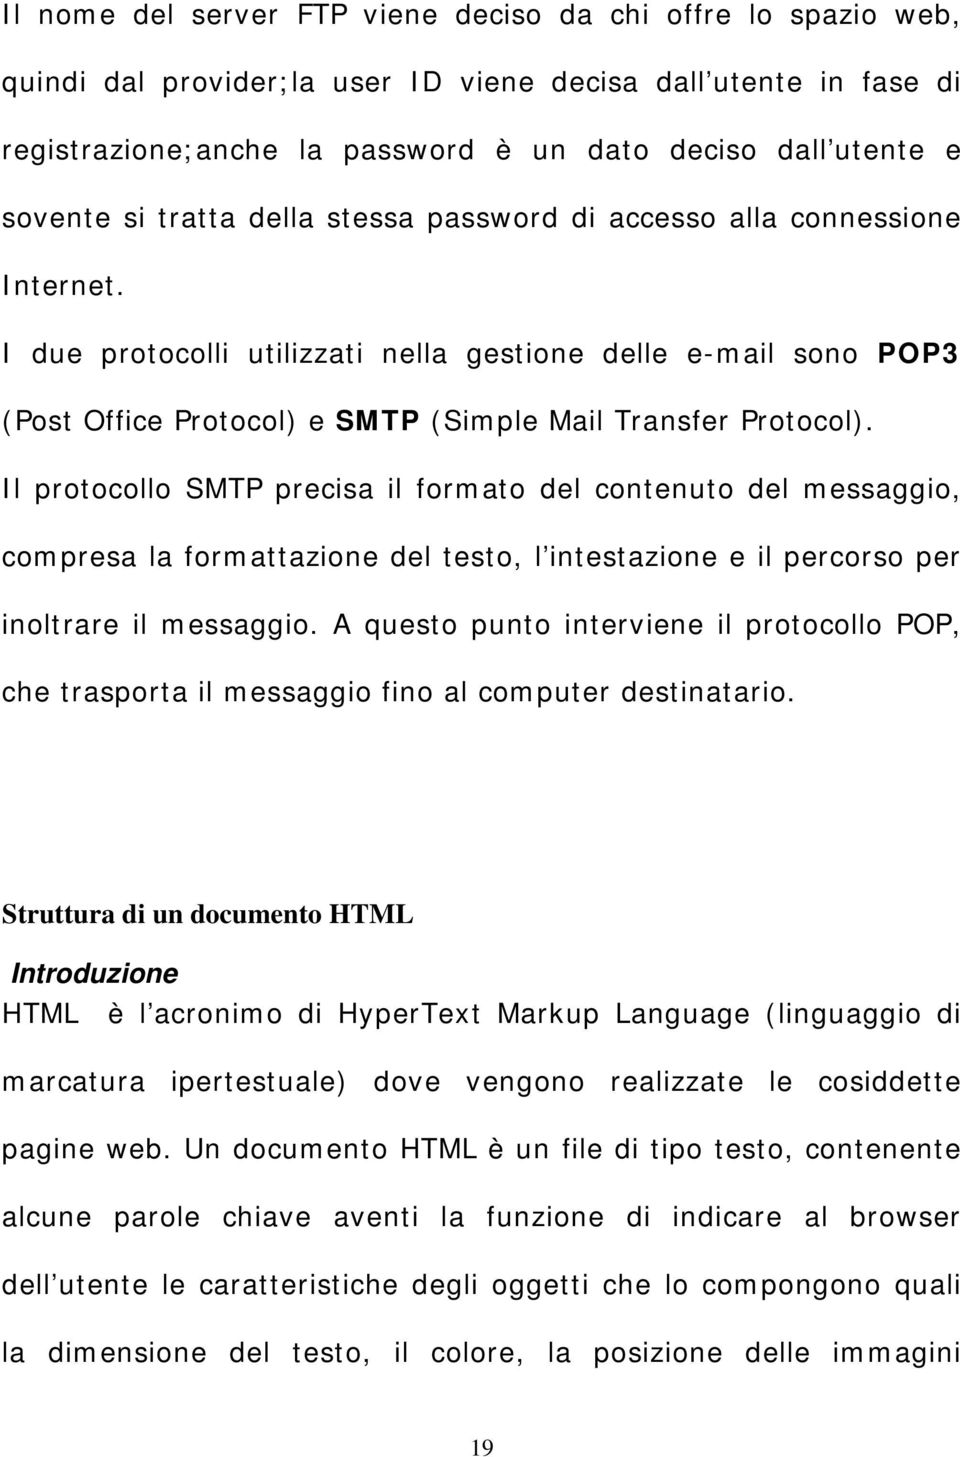 I due protocolli utilizzati nella gestione delle e-mail sono POP3 (Post Office Protocol) e SMTP (Simple Mail Transfer Protocol).